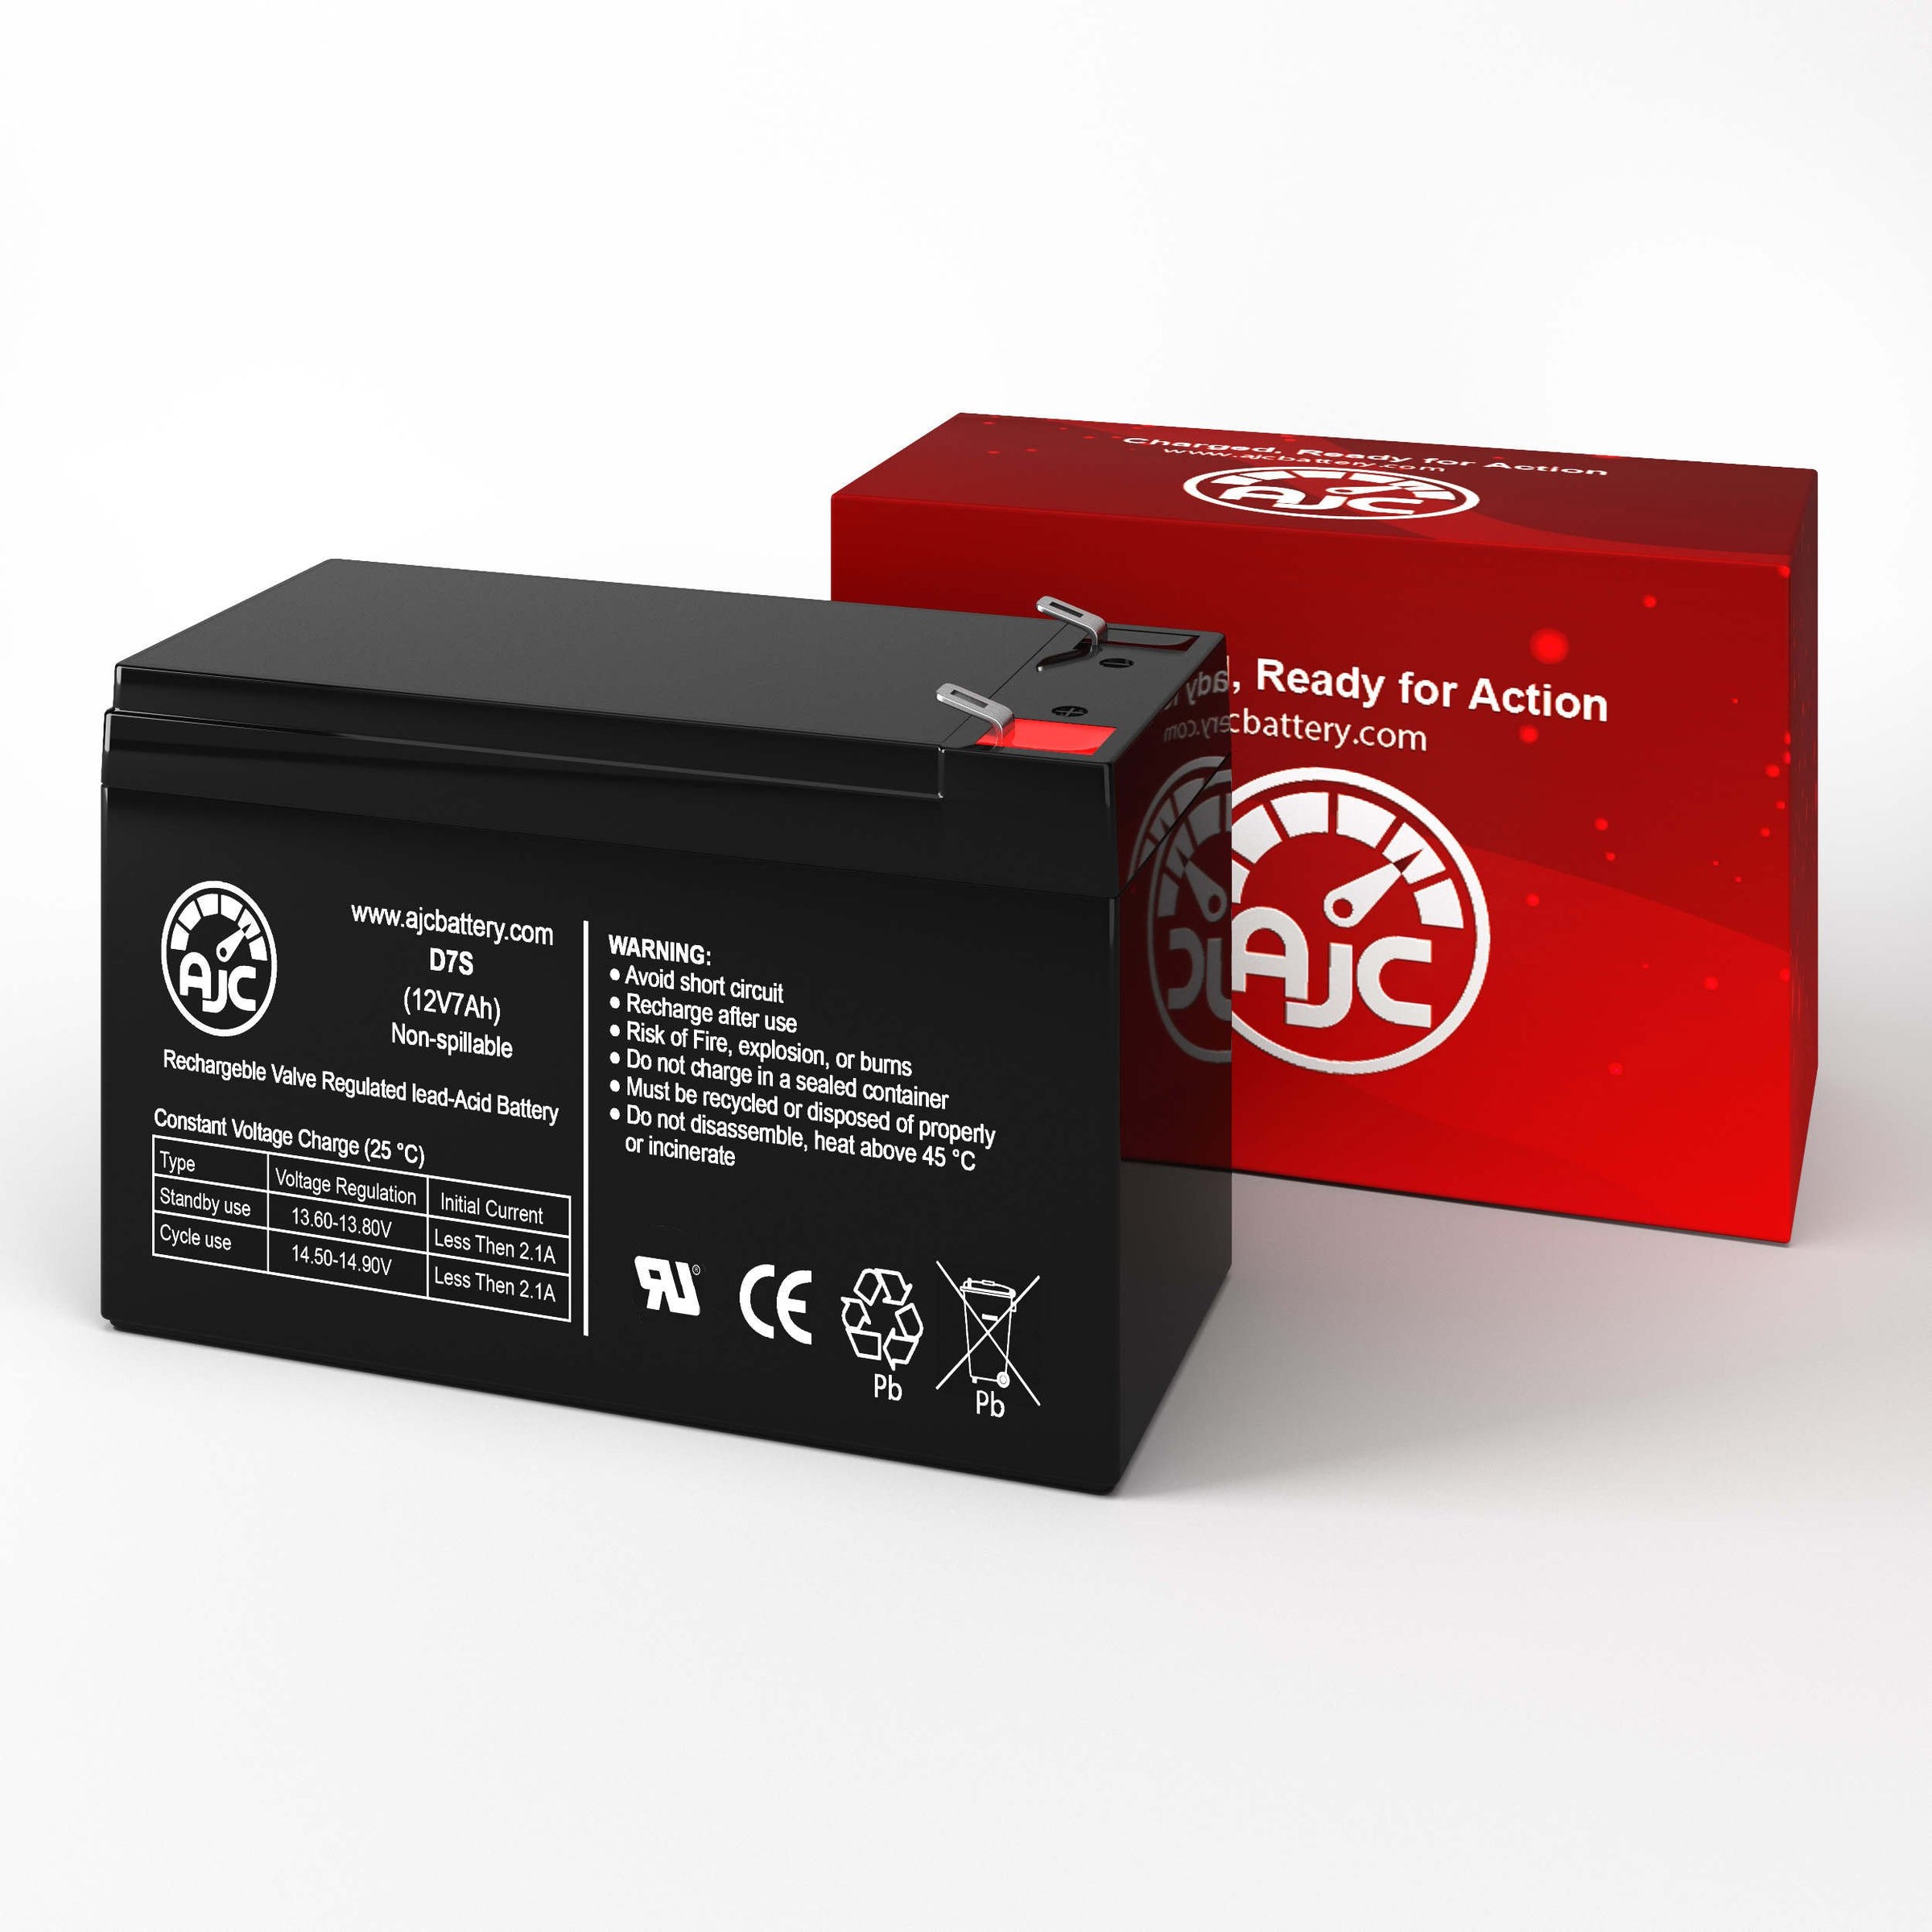 Alpha Technologies Novus II 12V 7Ah UPS Replacement Battery BatteryClerkcom UPS